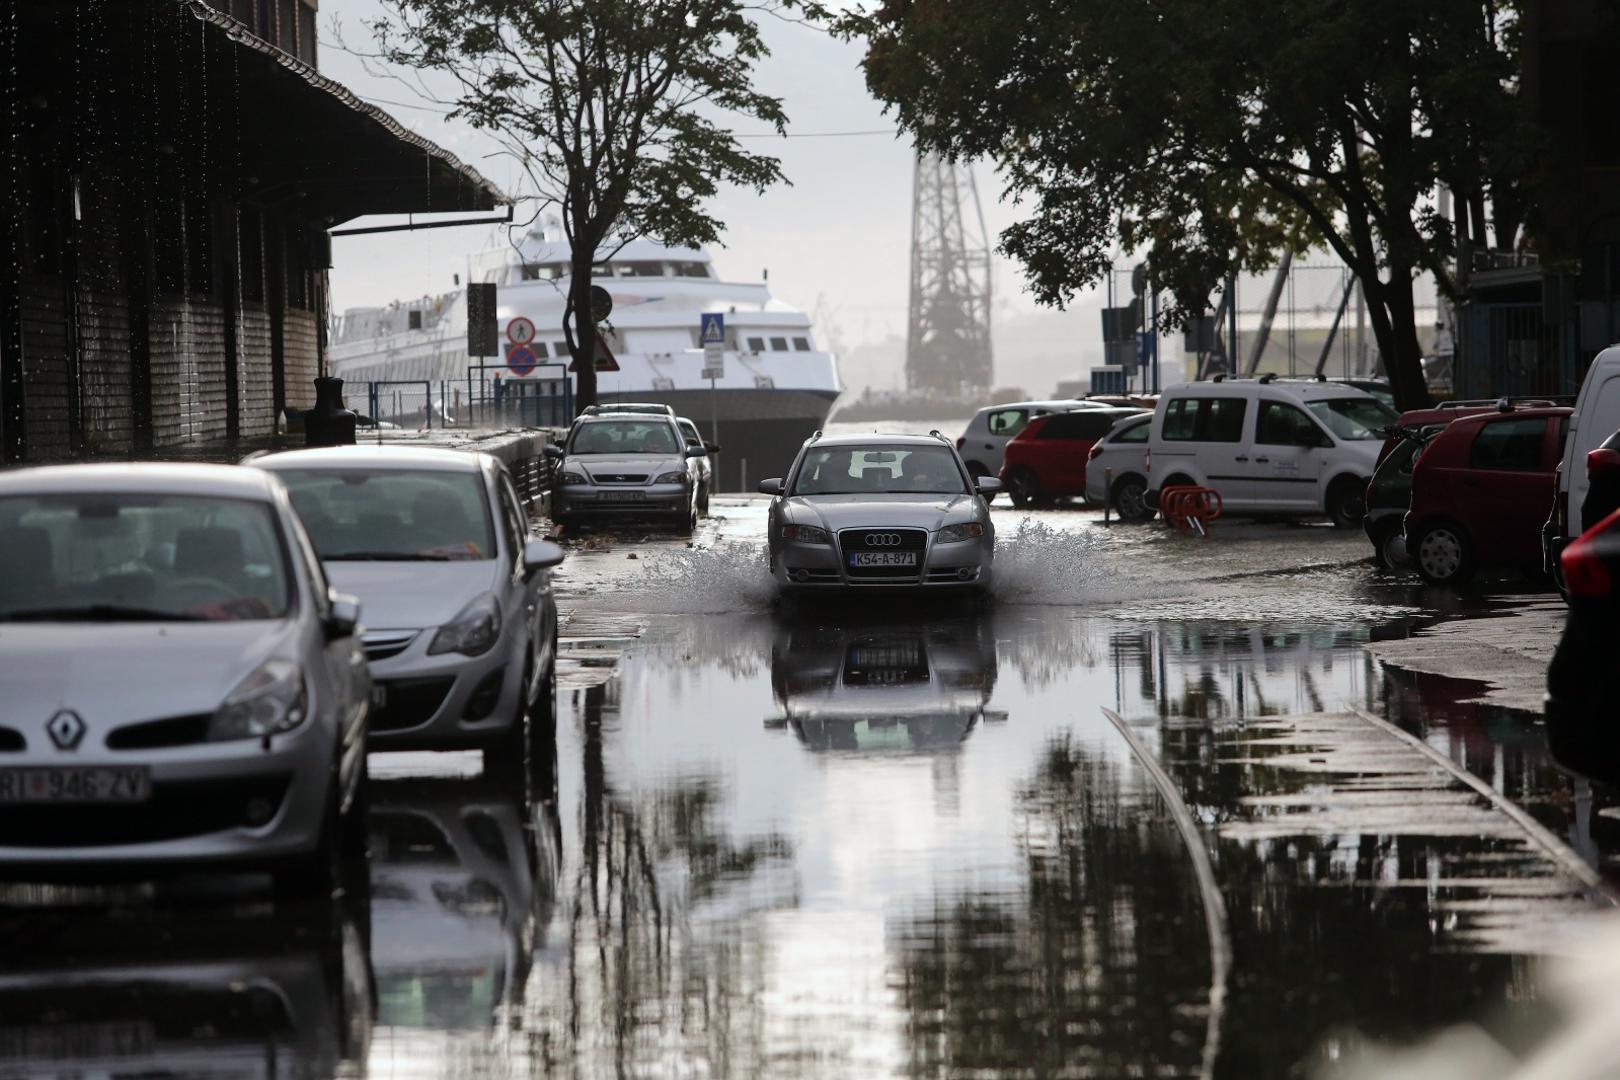 03.10.2020., Rijeka - Zbog jake kise poplavljena je ulica iza zgrade Carine. Photo: Goran Kovacic/PIXSELL